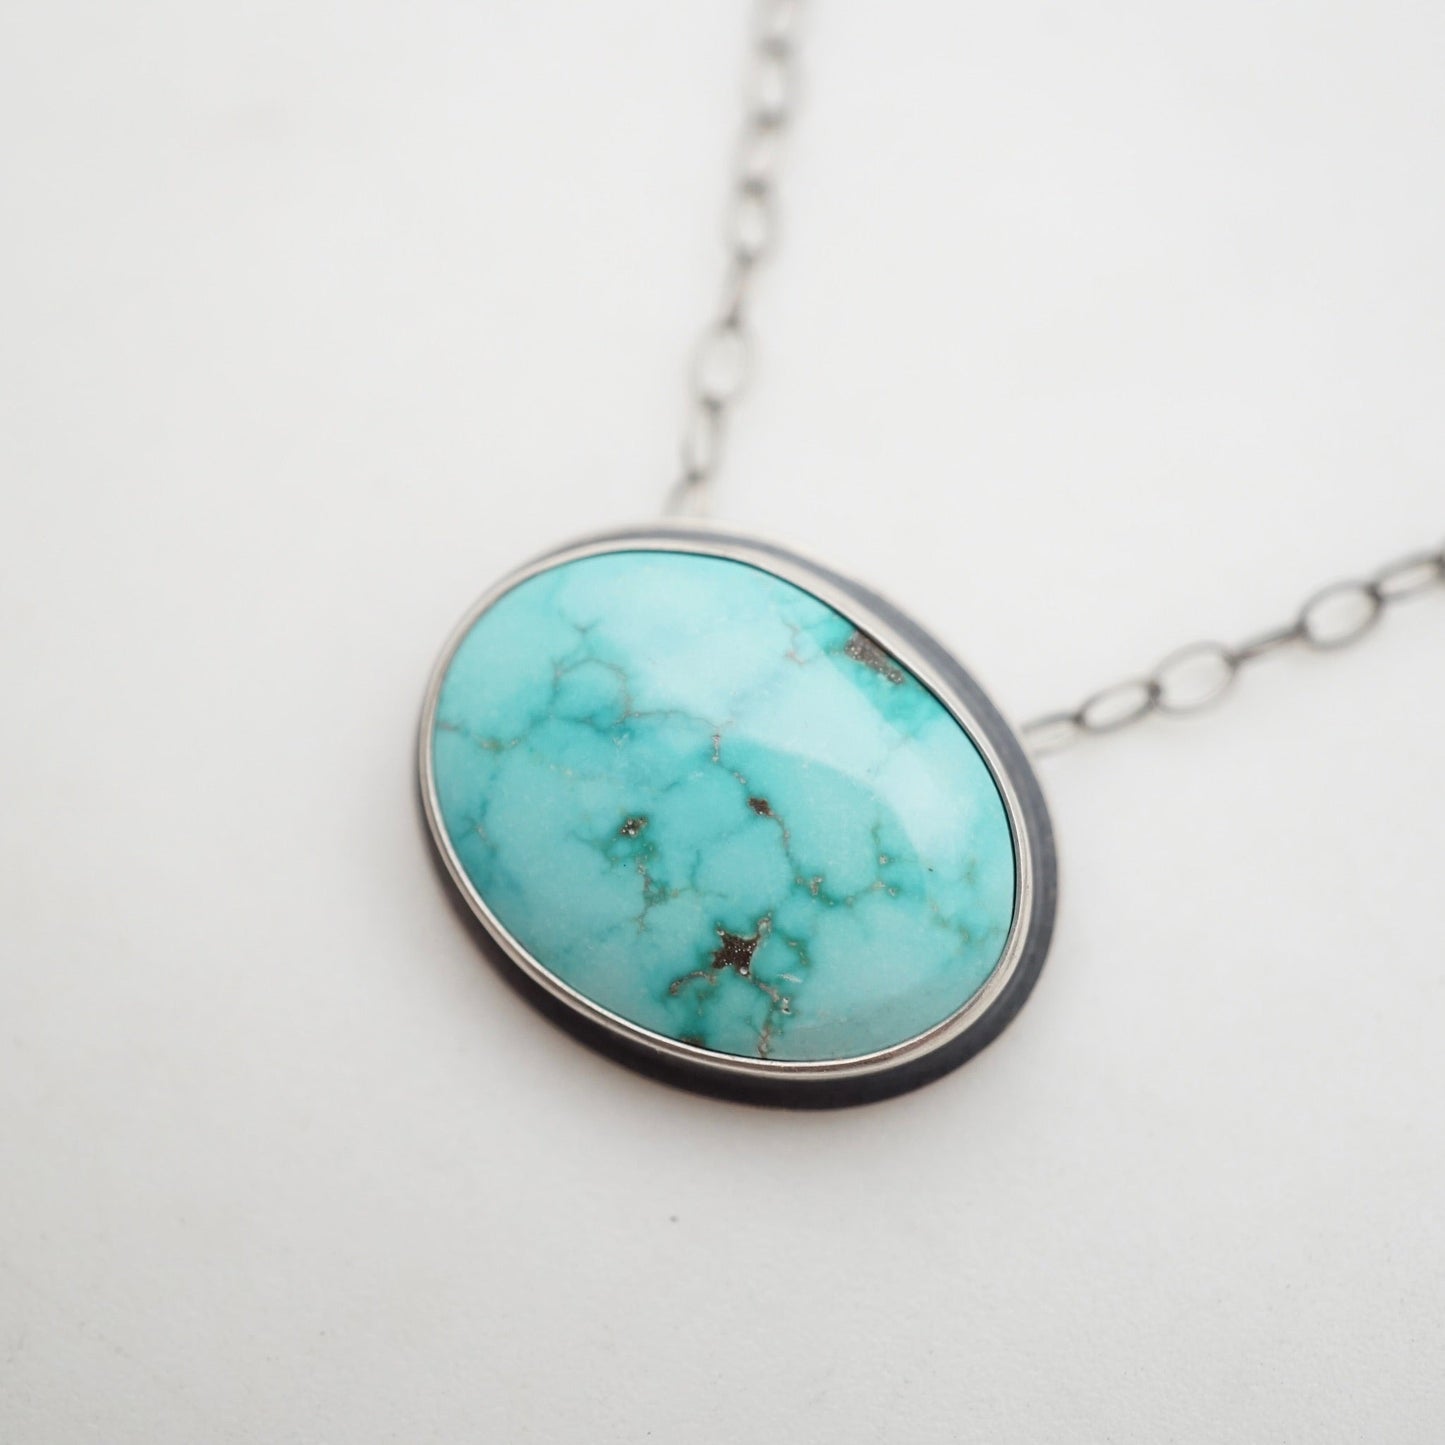 carico lake turquoise oval necklace #1 - Lumenrose